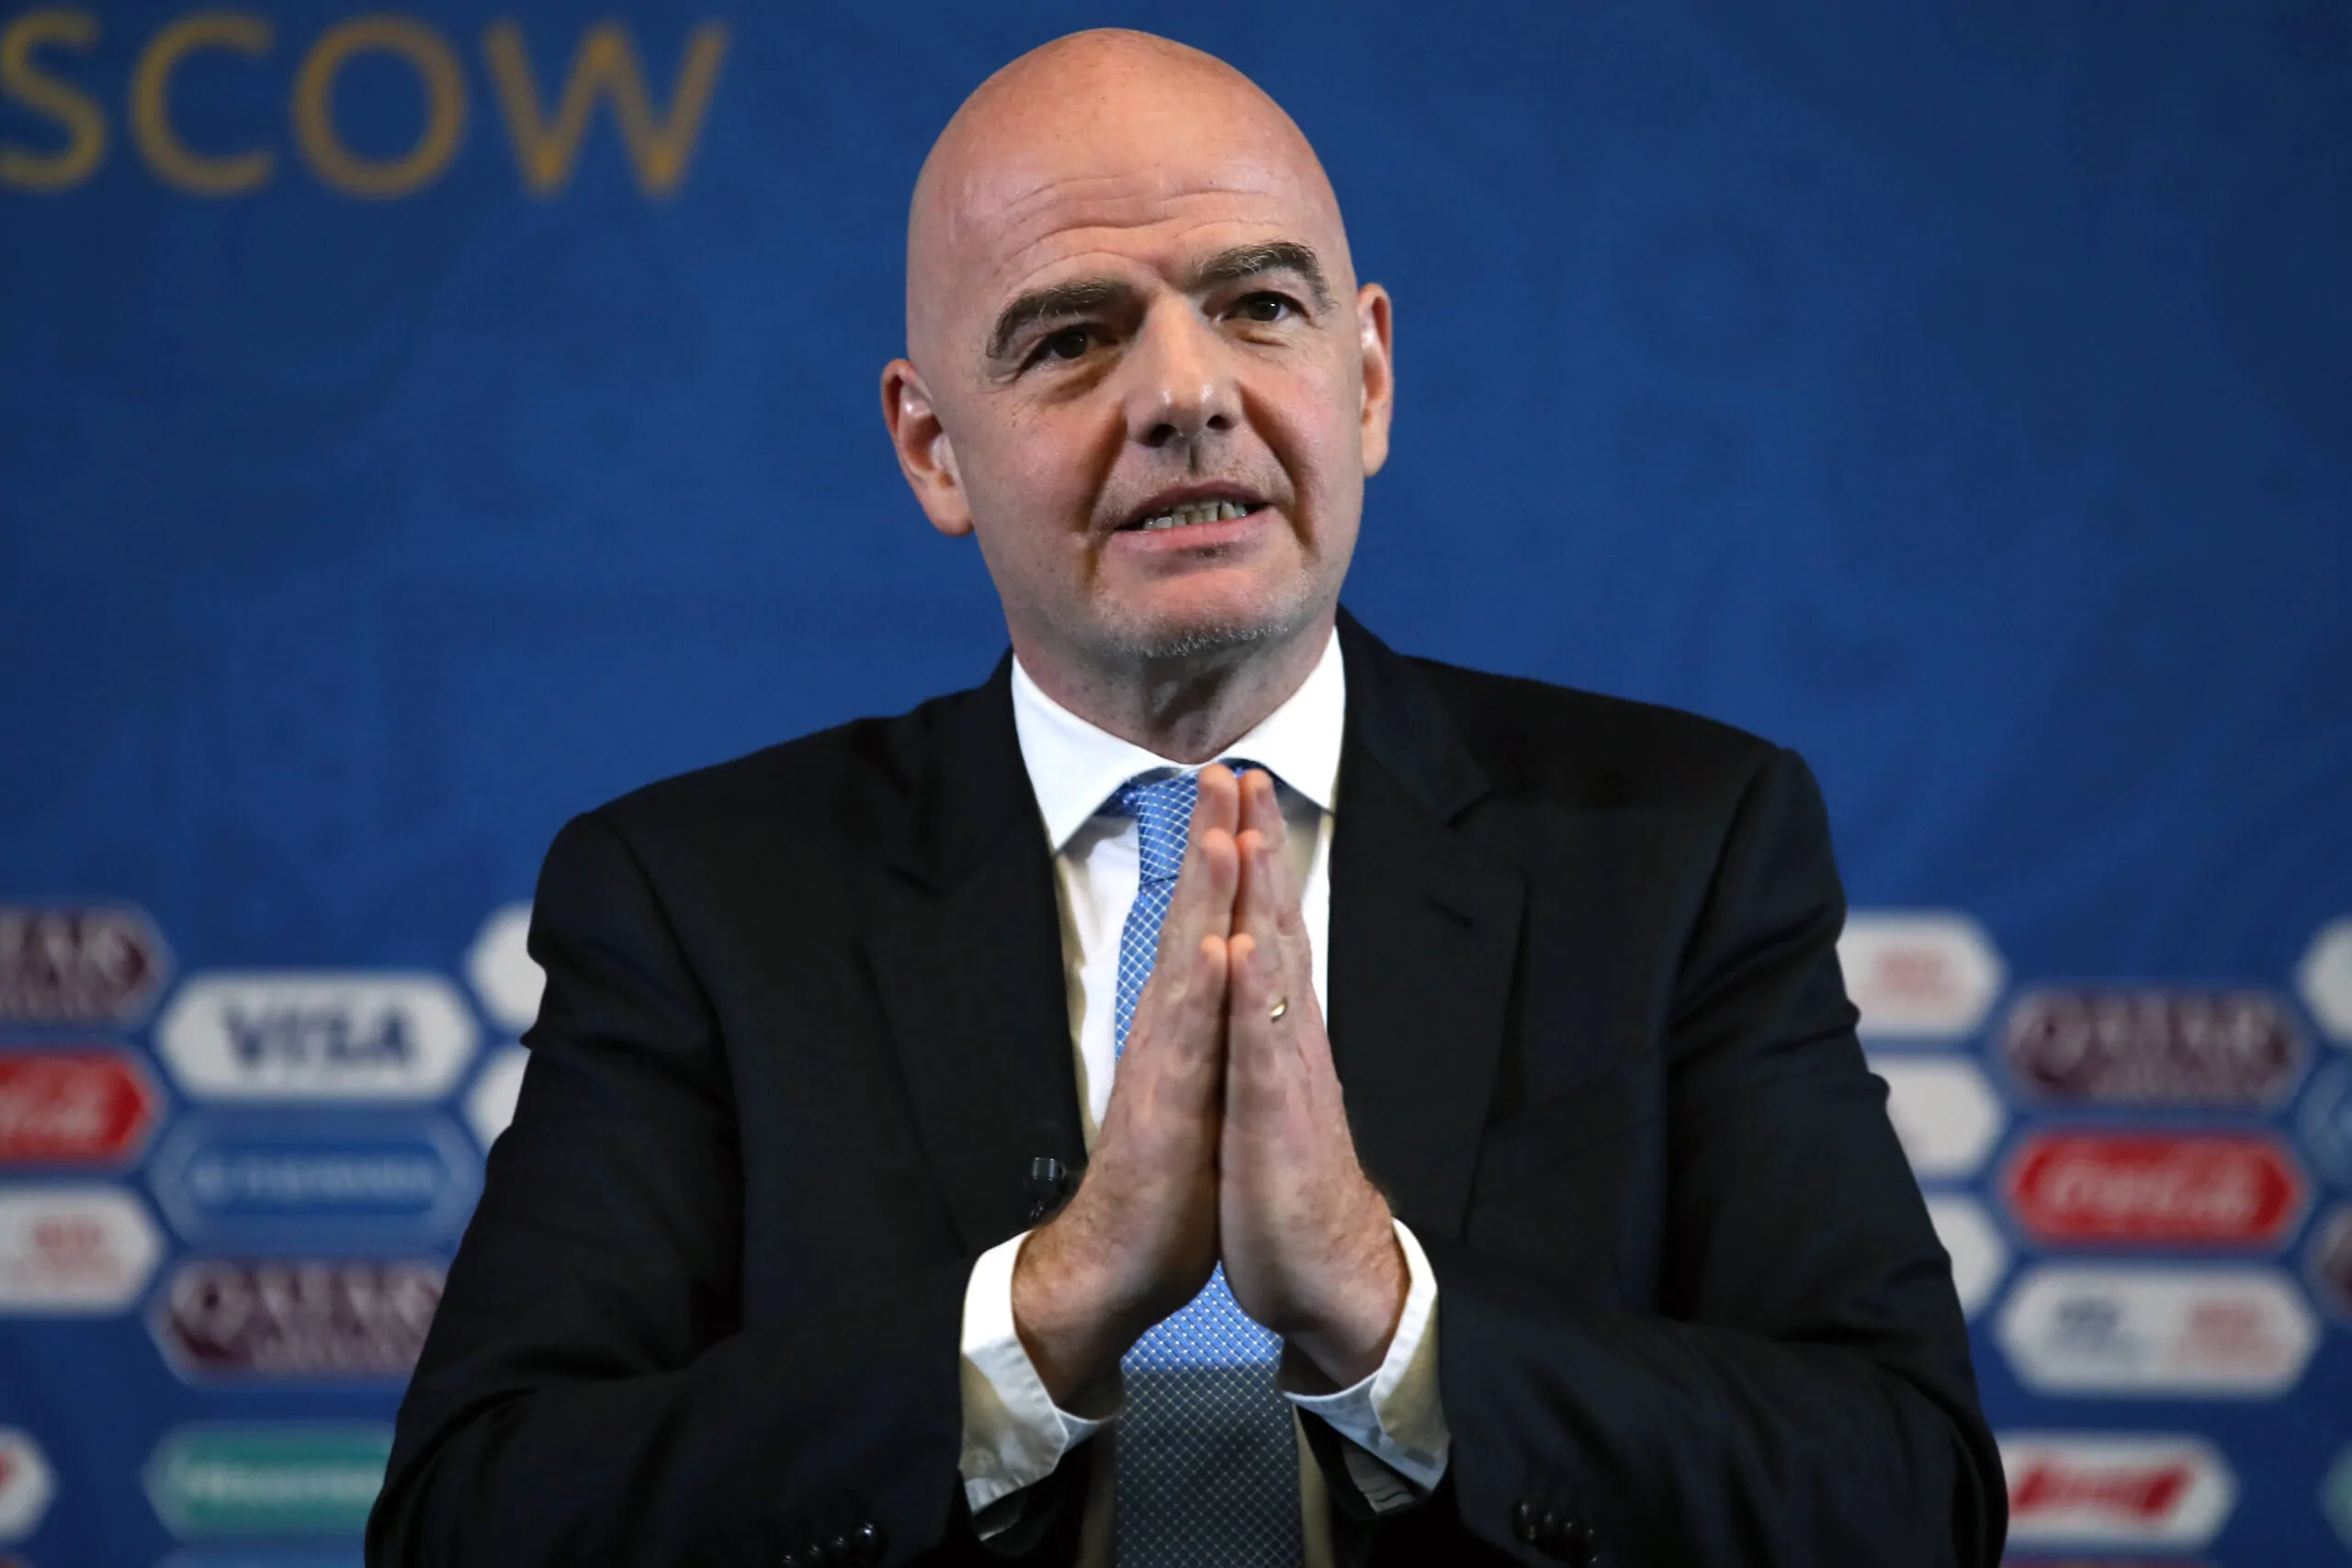 La FIFA contro la Russia: ufficiale l’eliminazione dai Mondiali di Qatar 2022